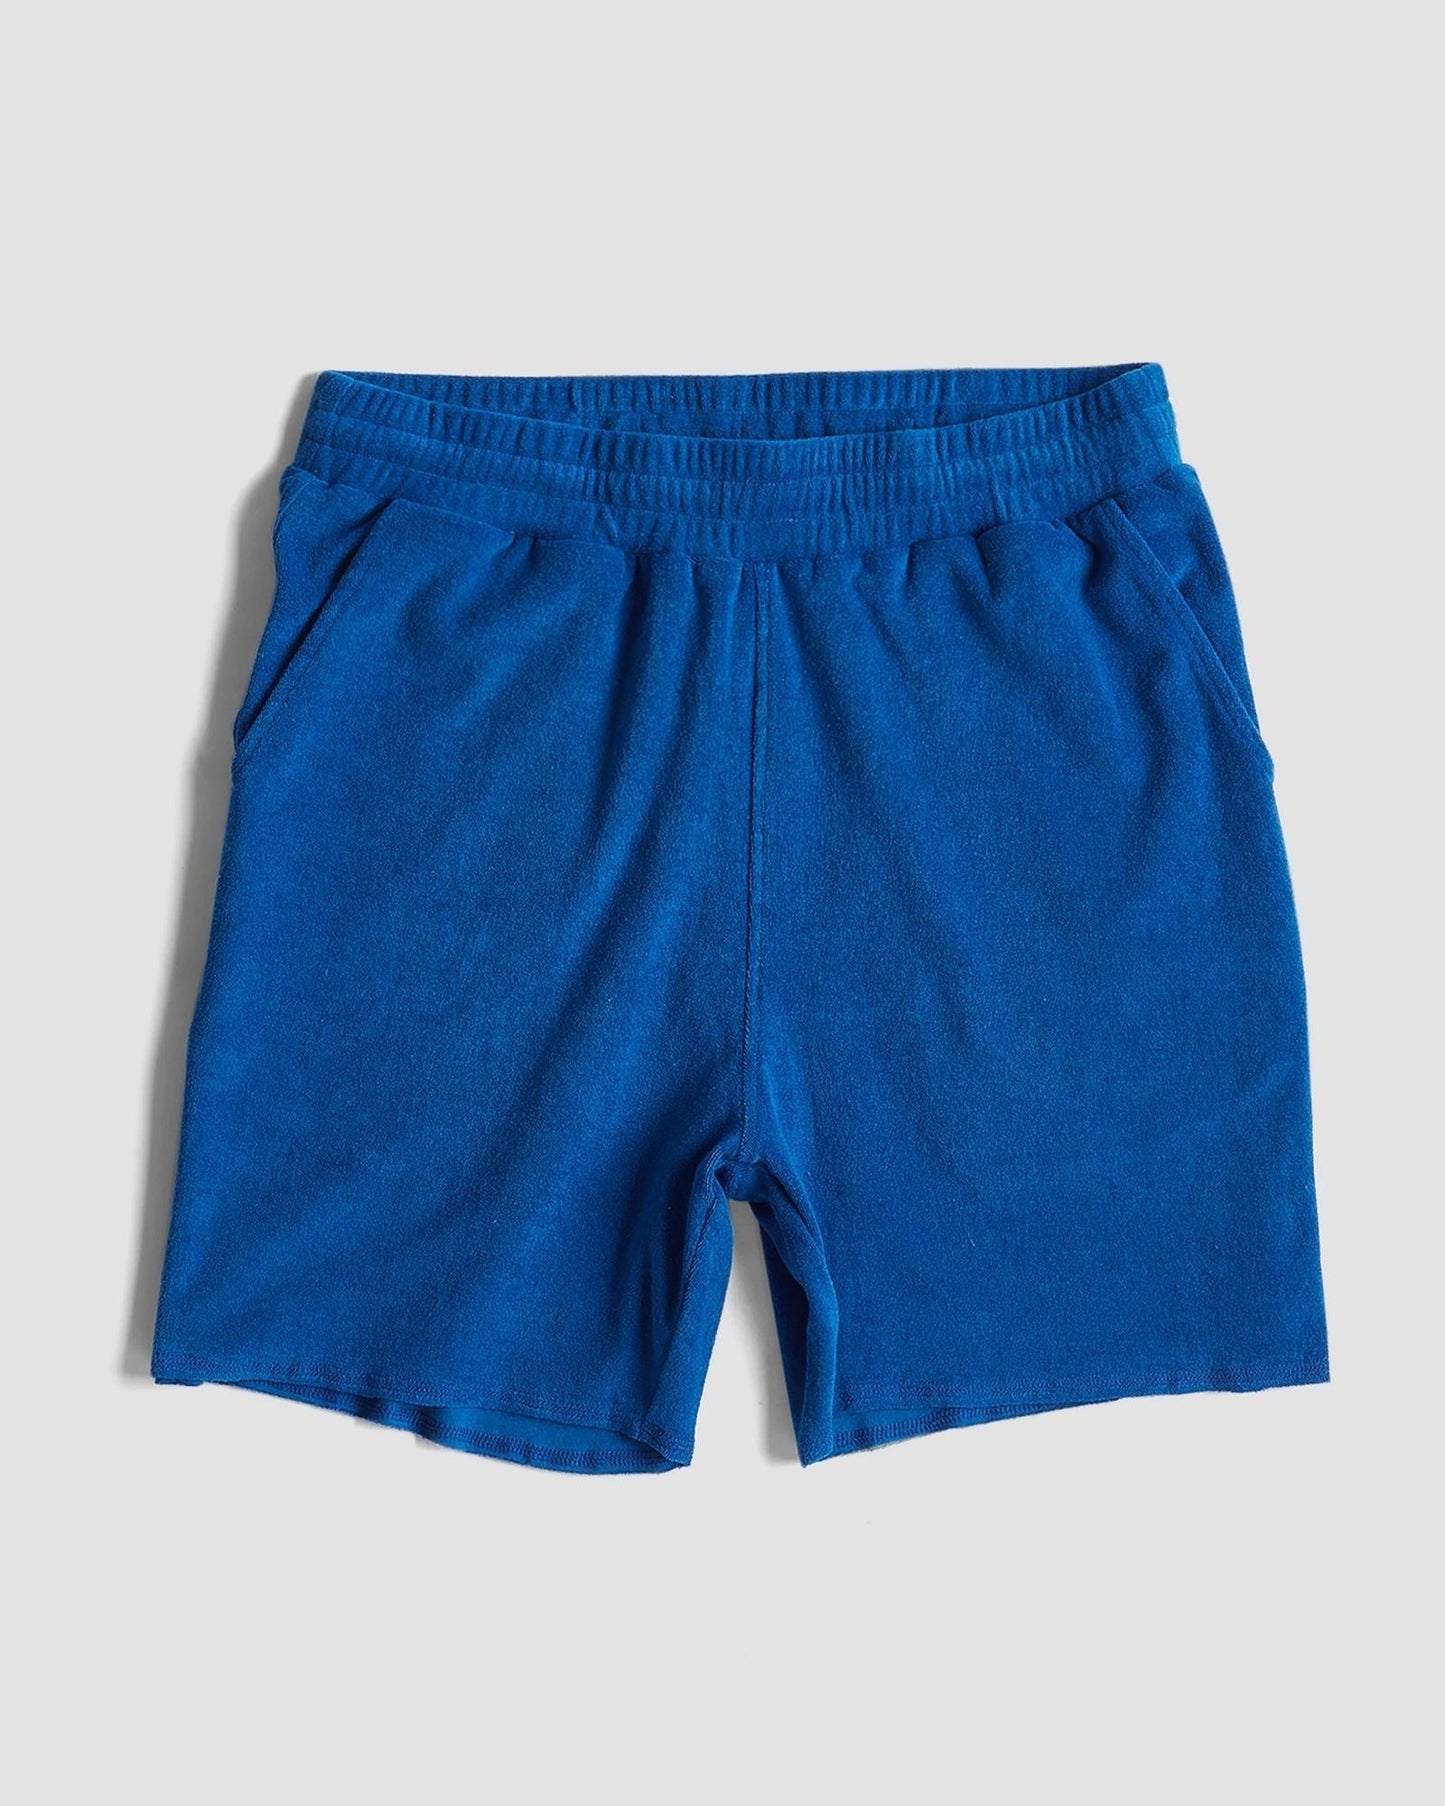 cityof_ - Terry Towel Shorts